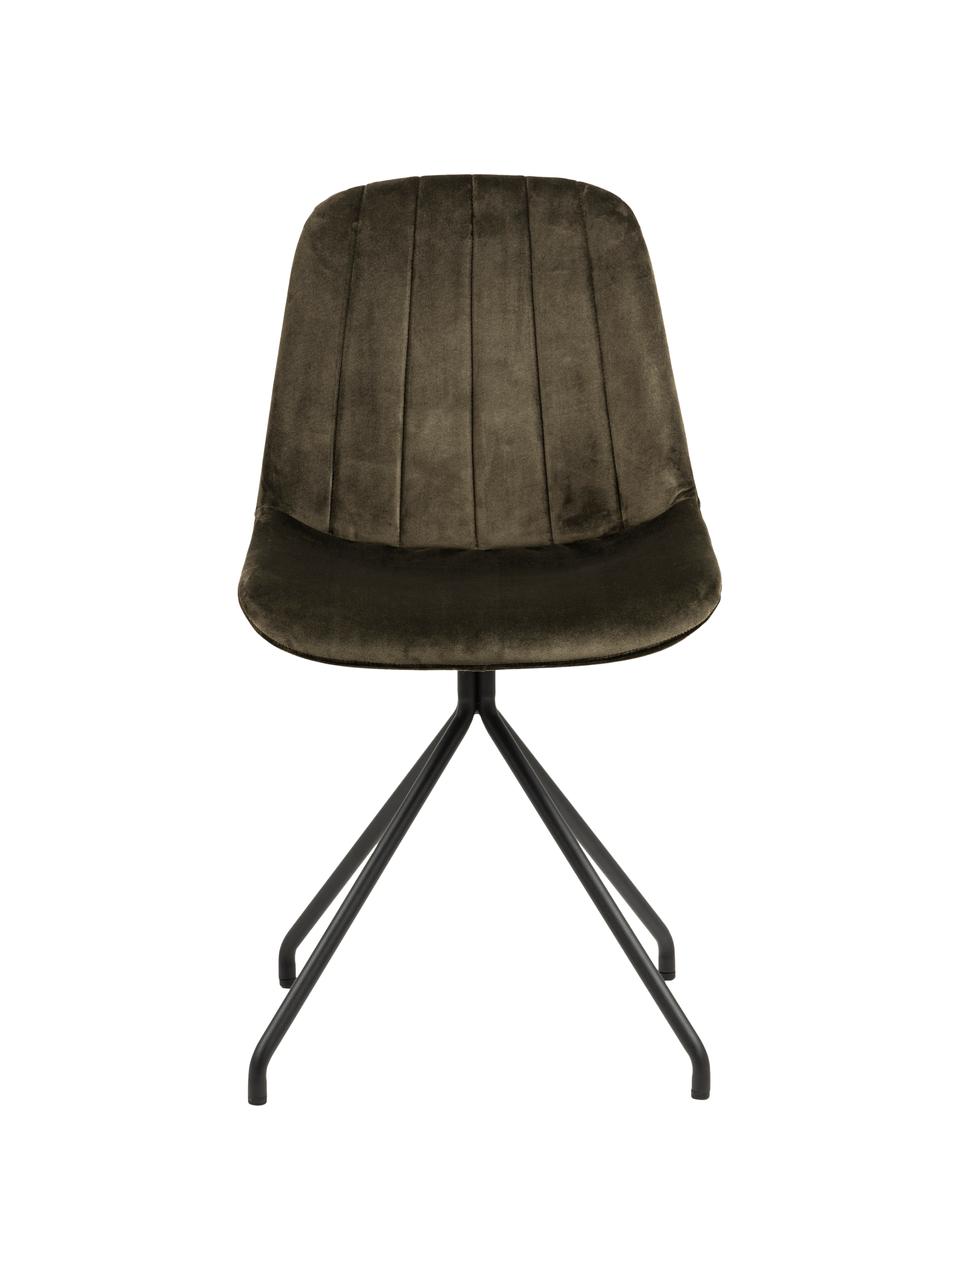 Krzesło tapicerowane z aksamitu Eva, Tapicerka: aksamit poliestrowy Dzięk, Nogi: metal lakierowany, Ciemny zielony, czarny, S 54 x G 47 cm